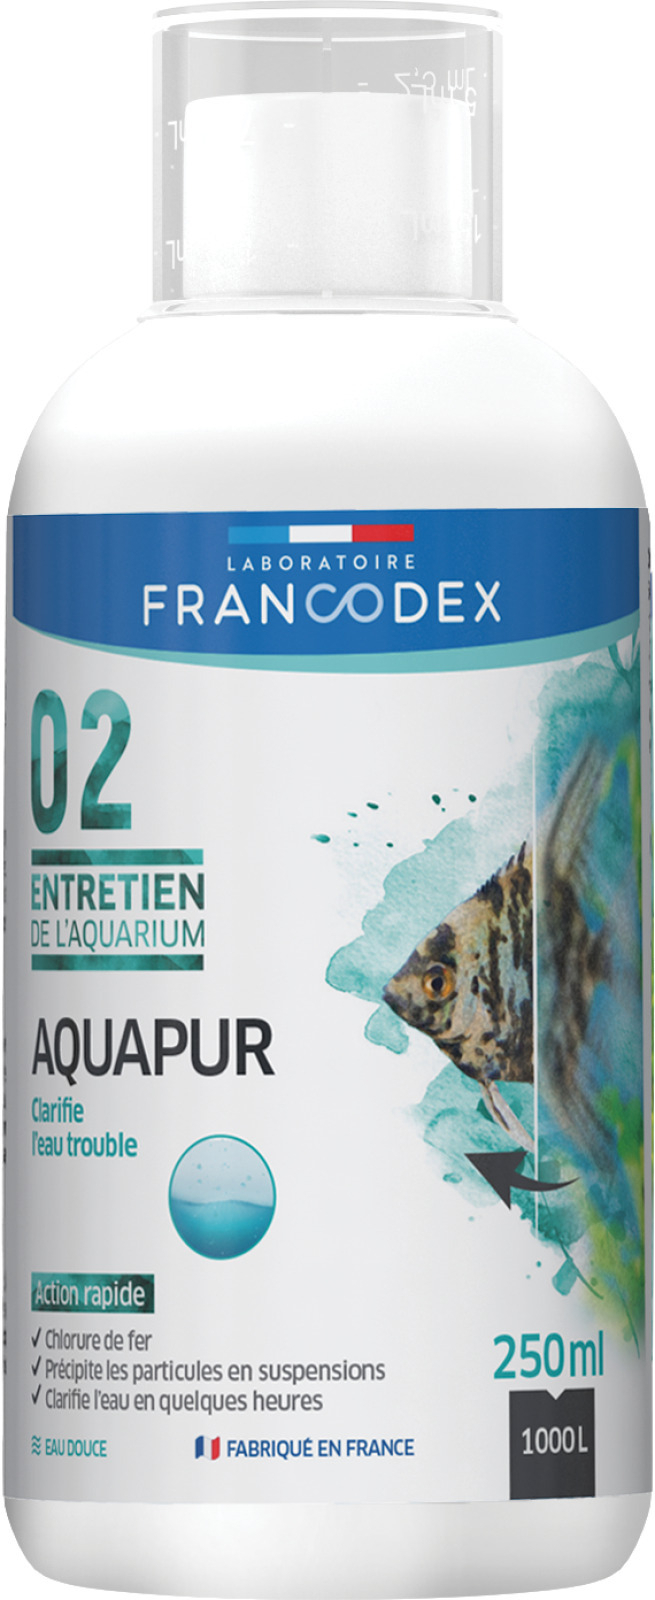 Clarificador de agua Aquapur FRANCODEX